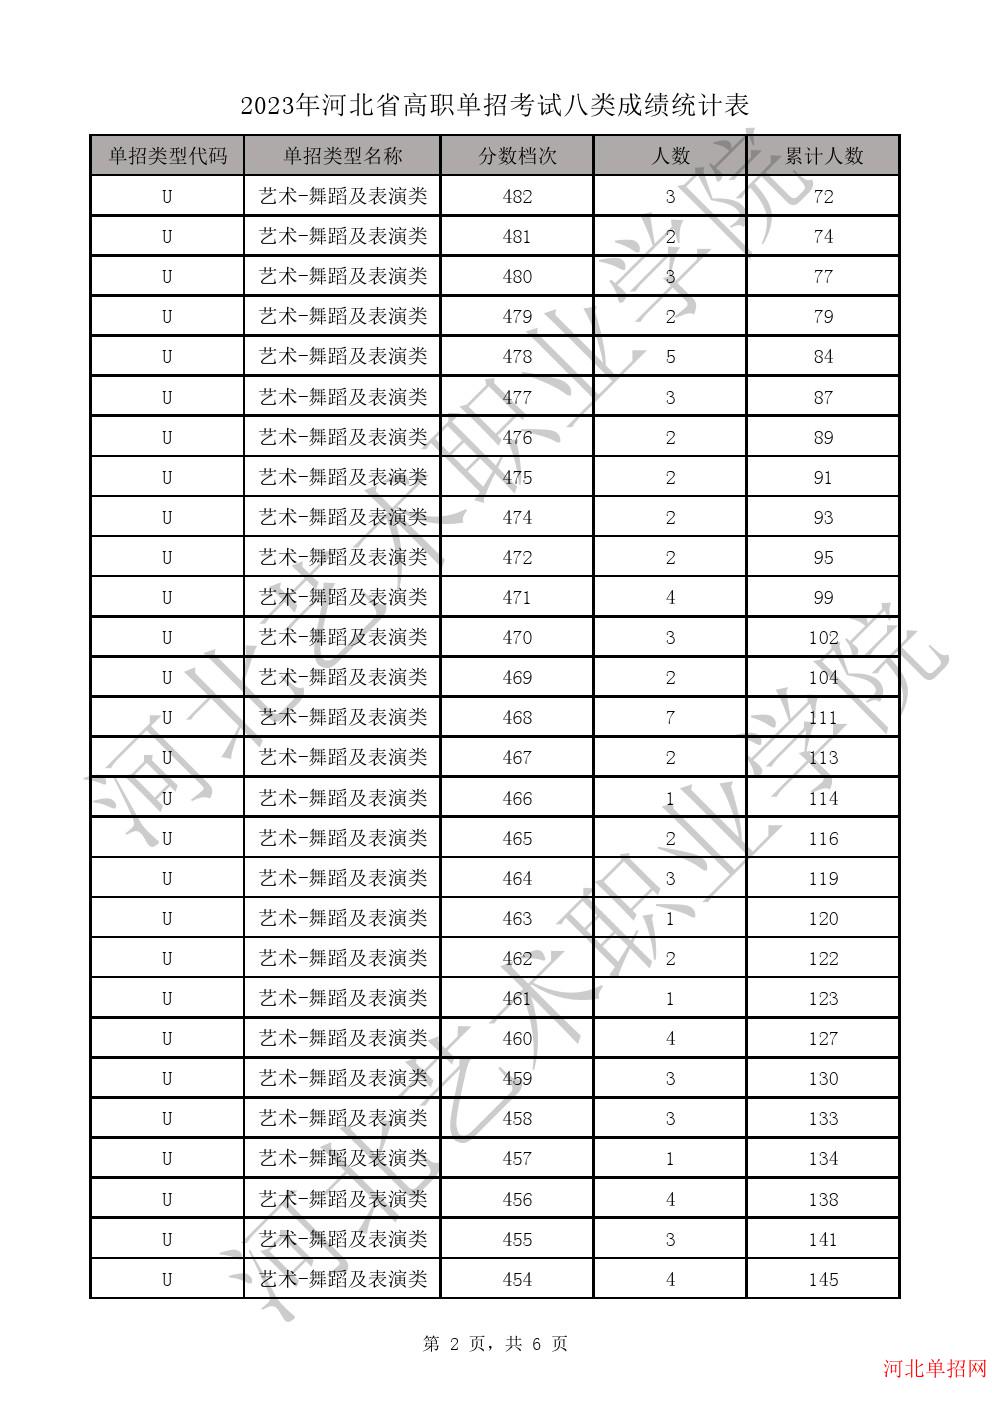 2023年河北省高职单招考试八类成绩统计表-U艺术-舞蹈及表演类一分一档表 图2